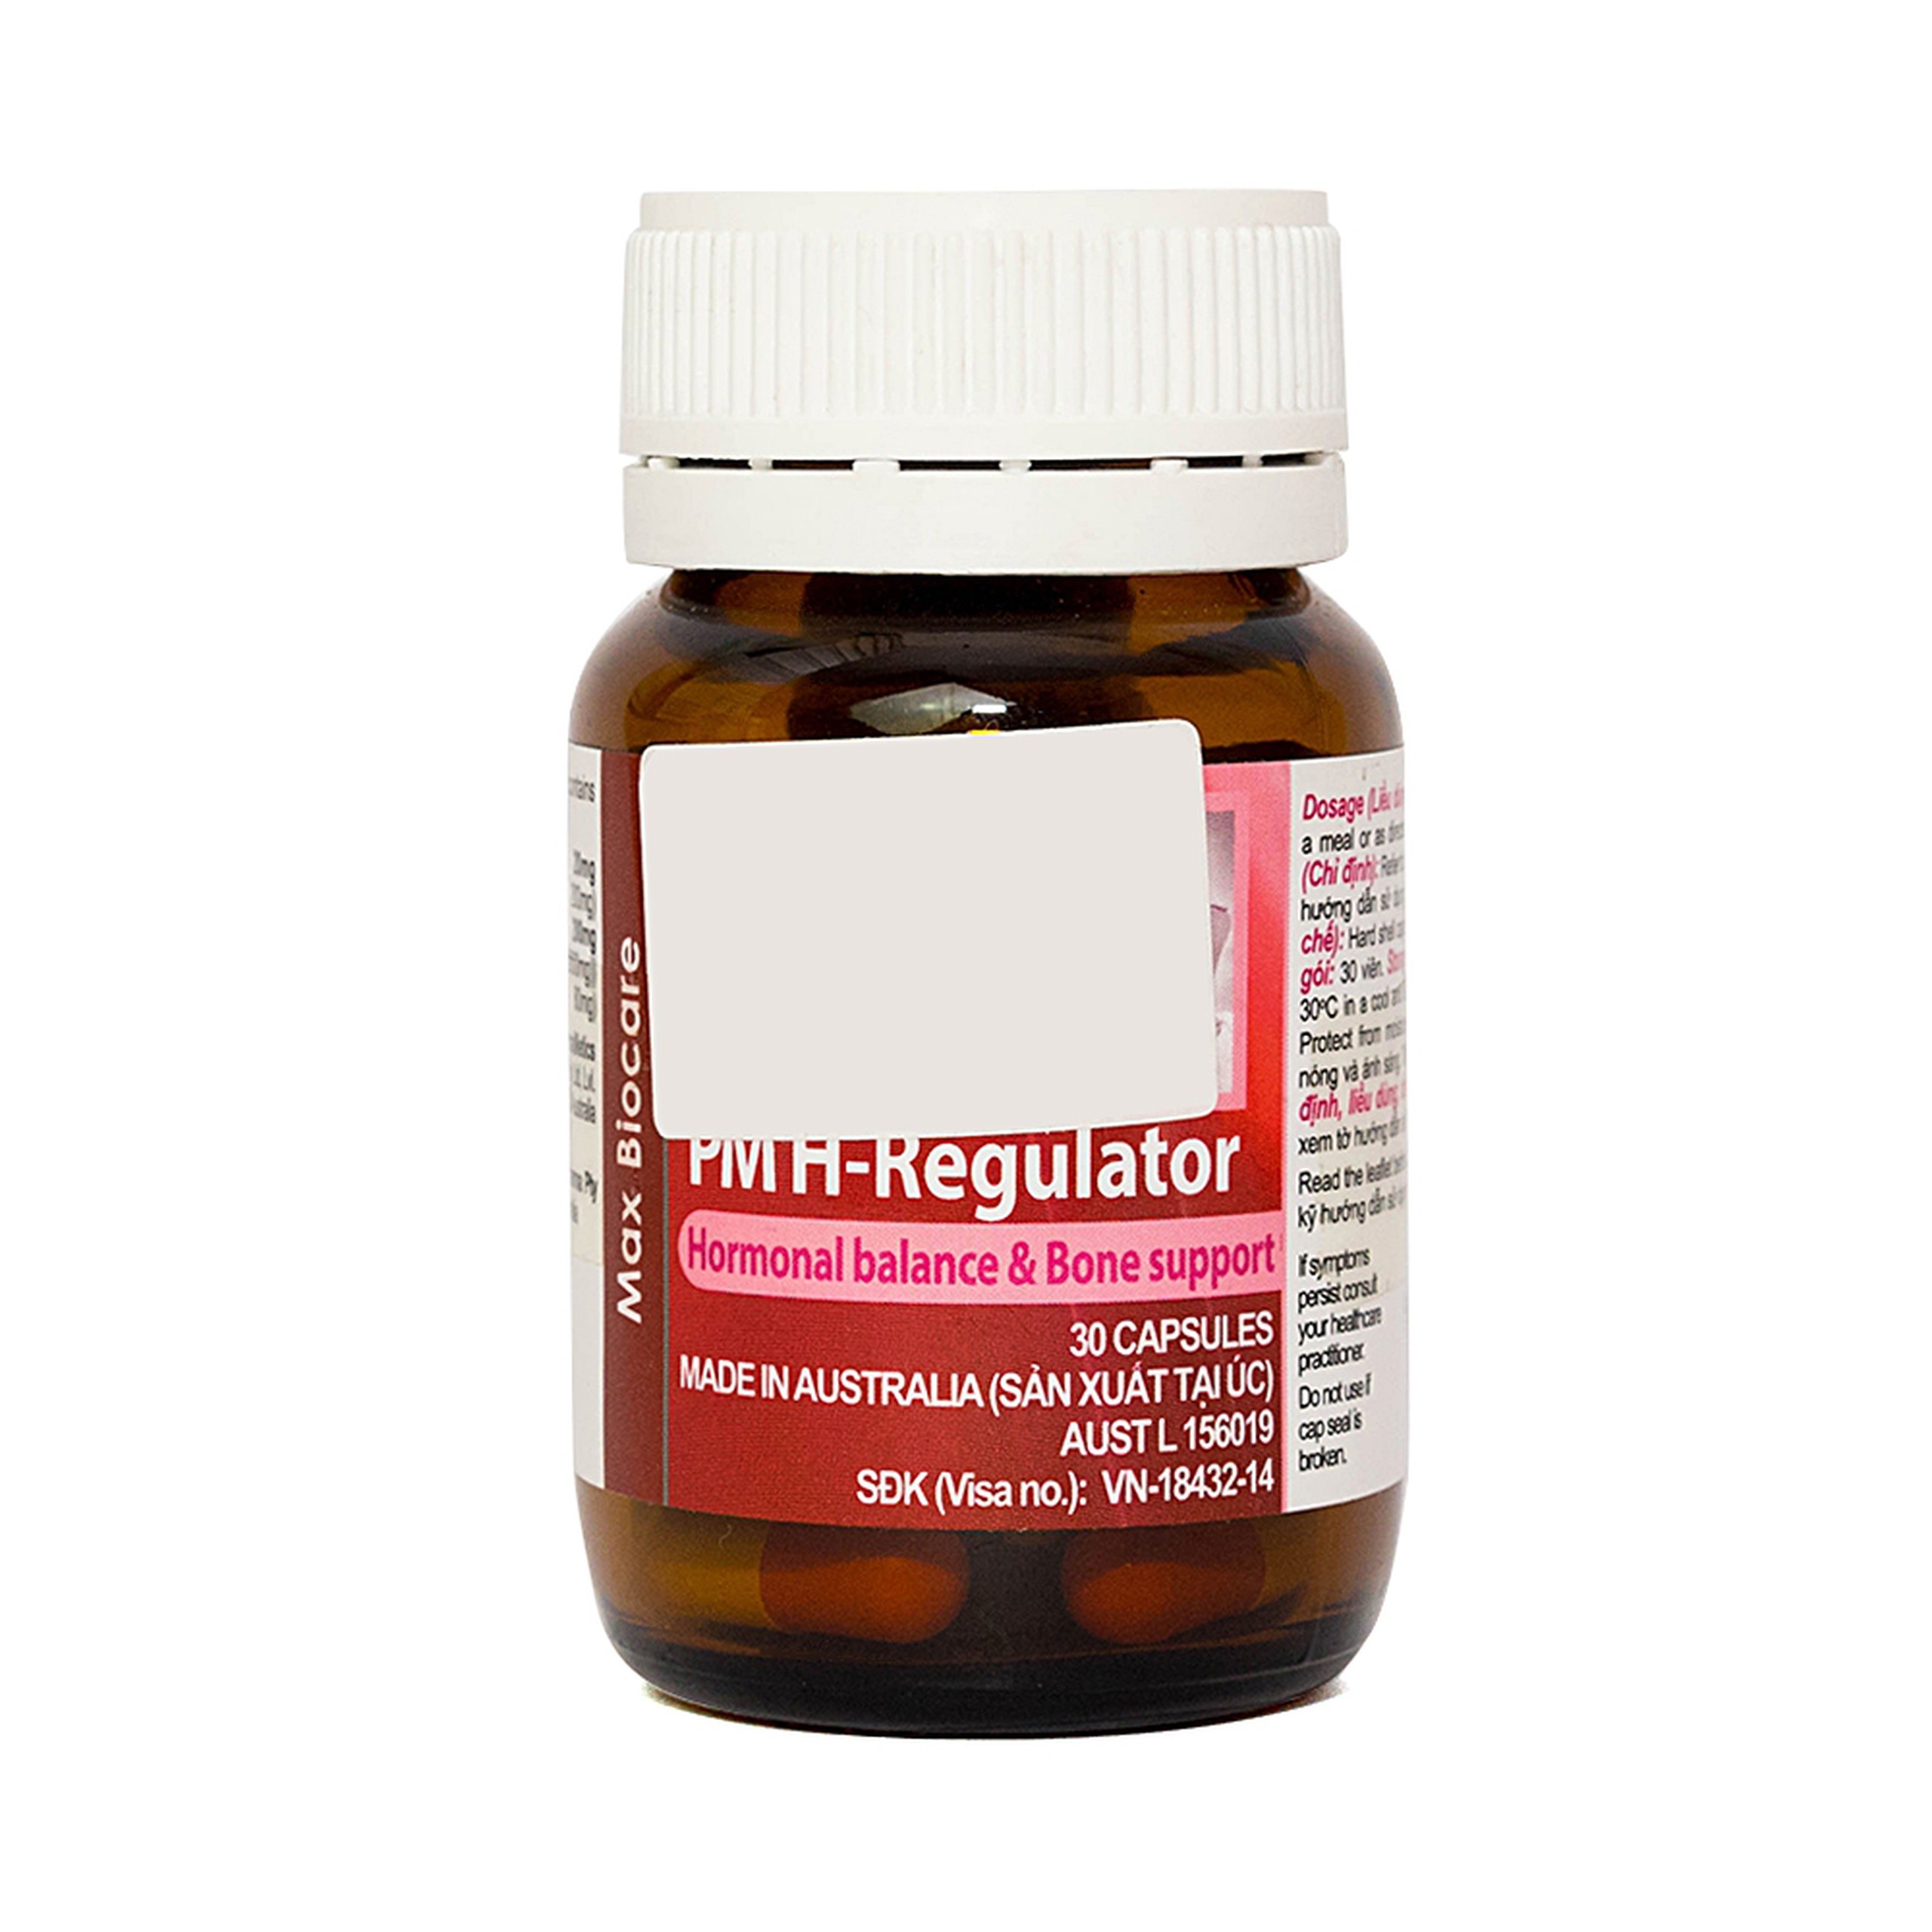 Thuốc PM H-Regulator Probiotec giảm cơn bốc hỏa, đổ mồ hôi thời kỳ tiền mãn kinh (30 viên)